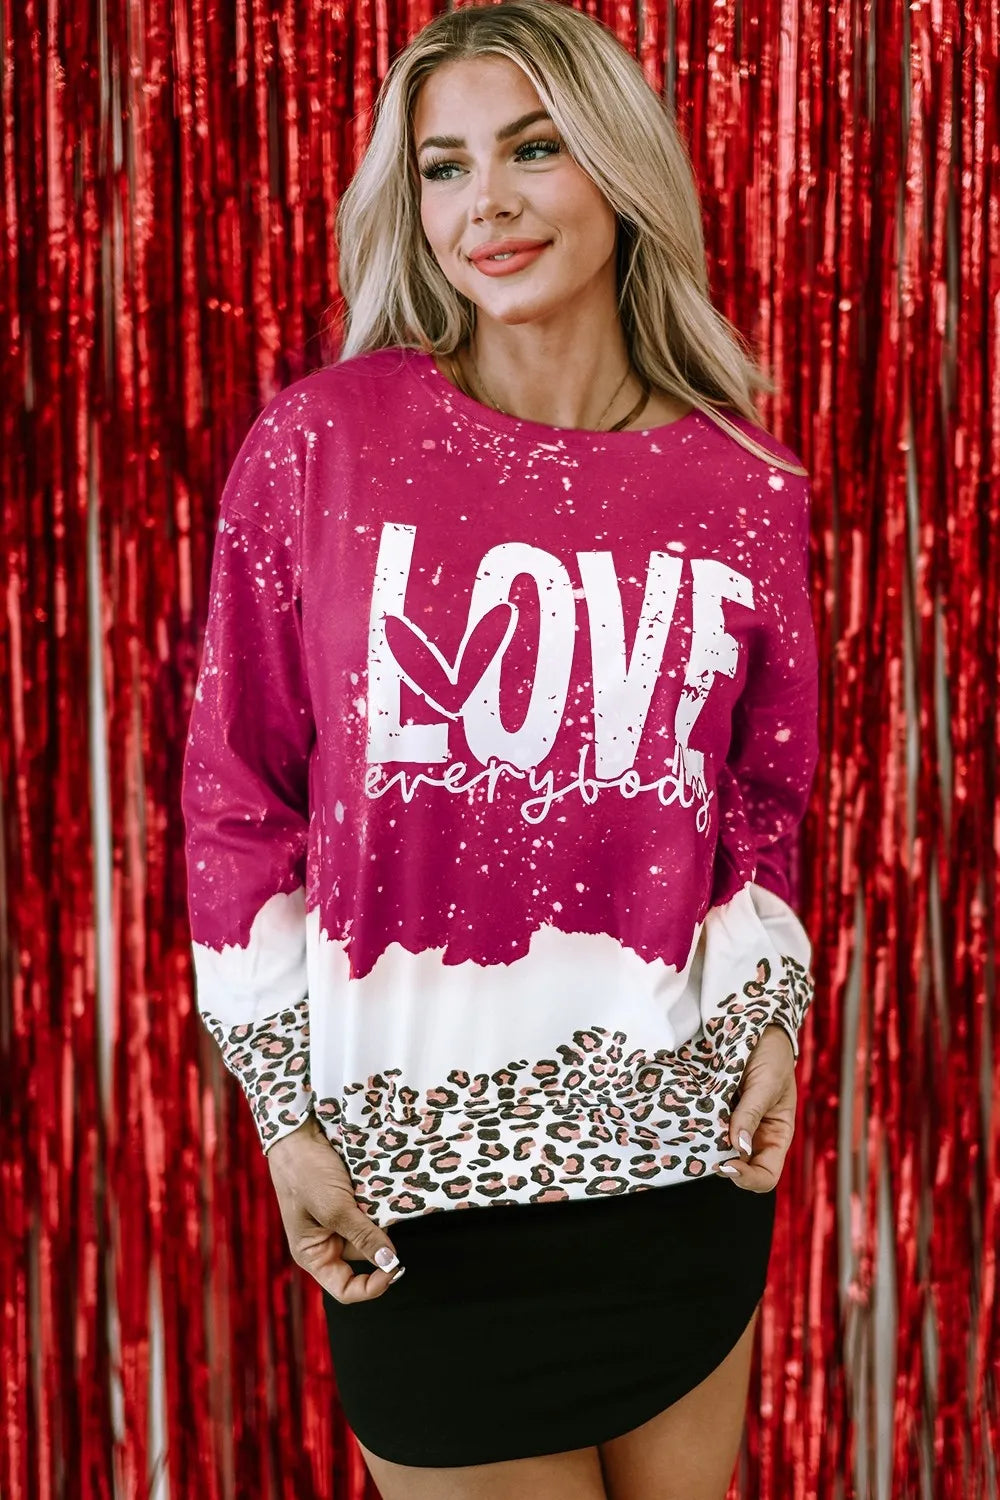 LOVE EVERYBODY Leopard Round Neck Sweatshirt